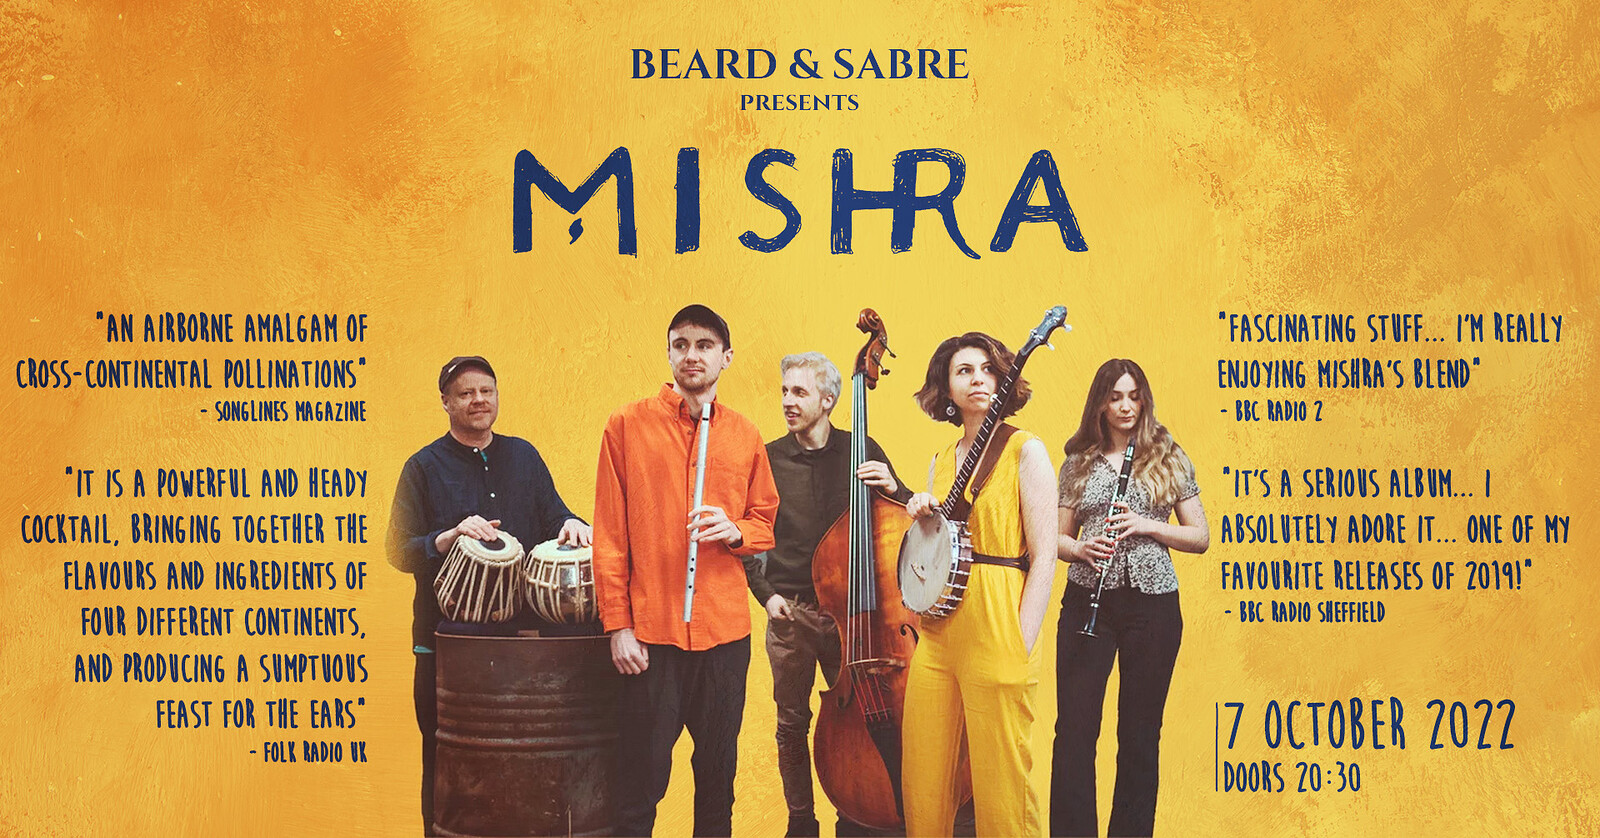 MISHRA at Beard and Sabre